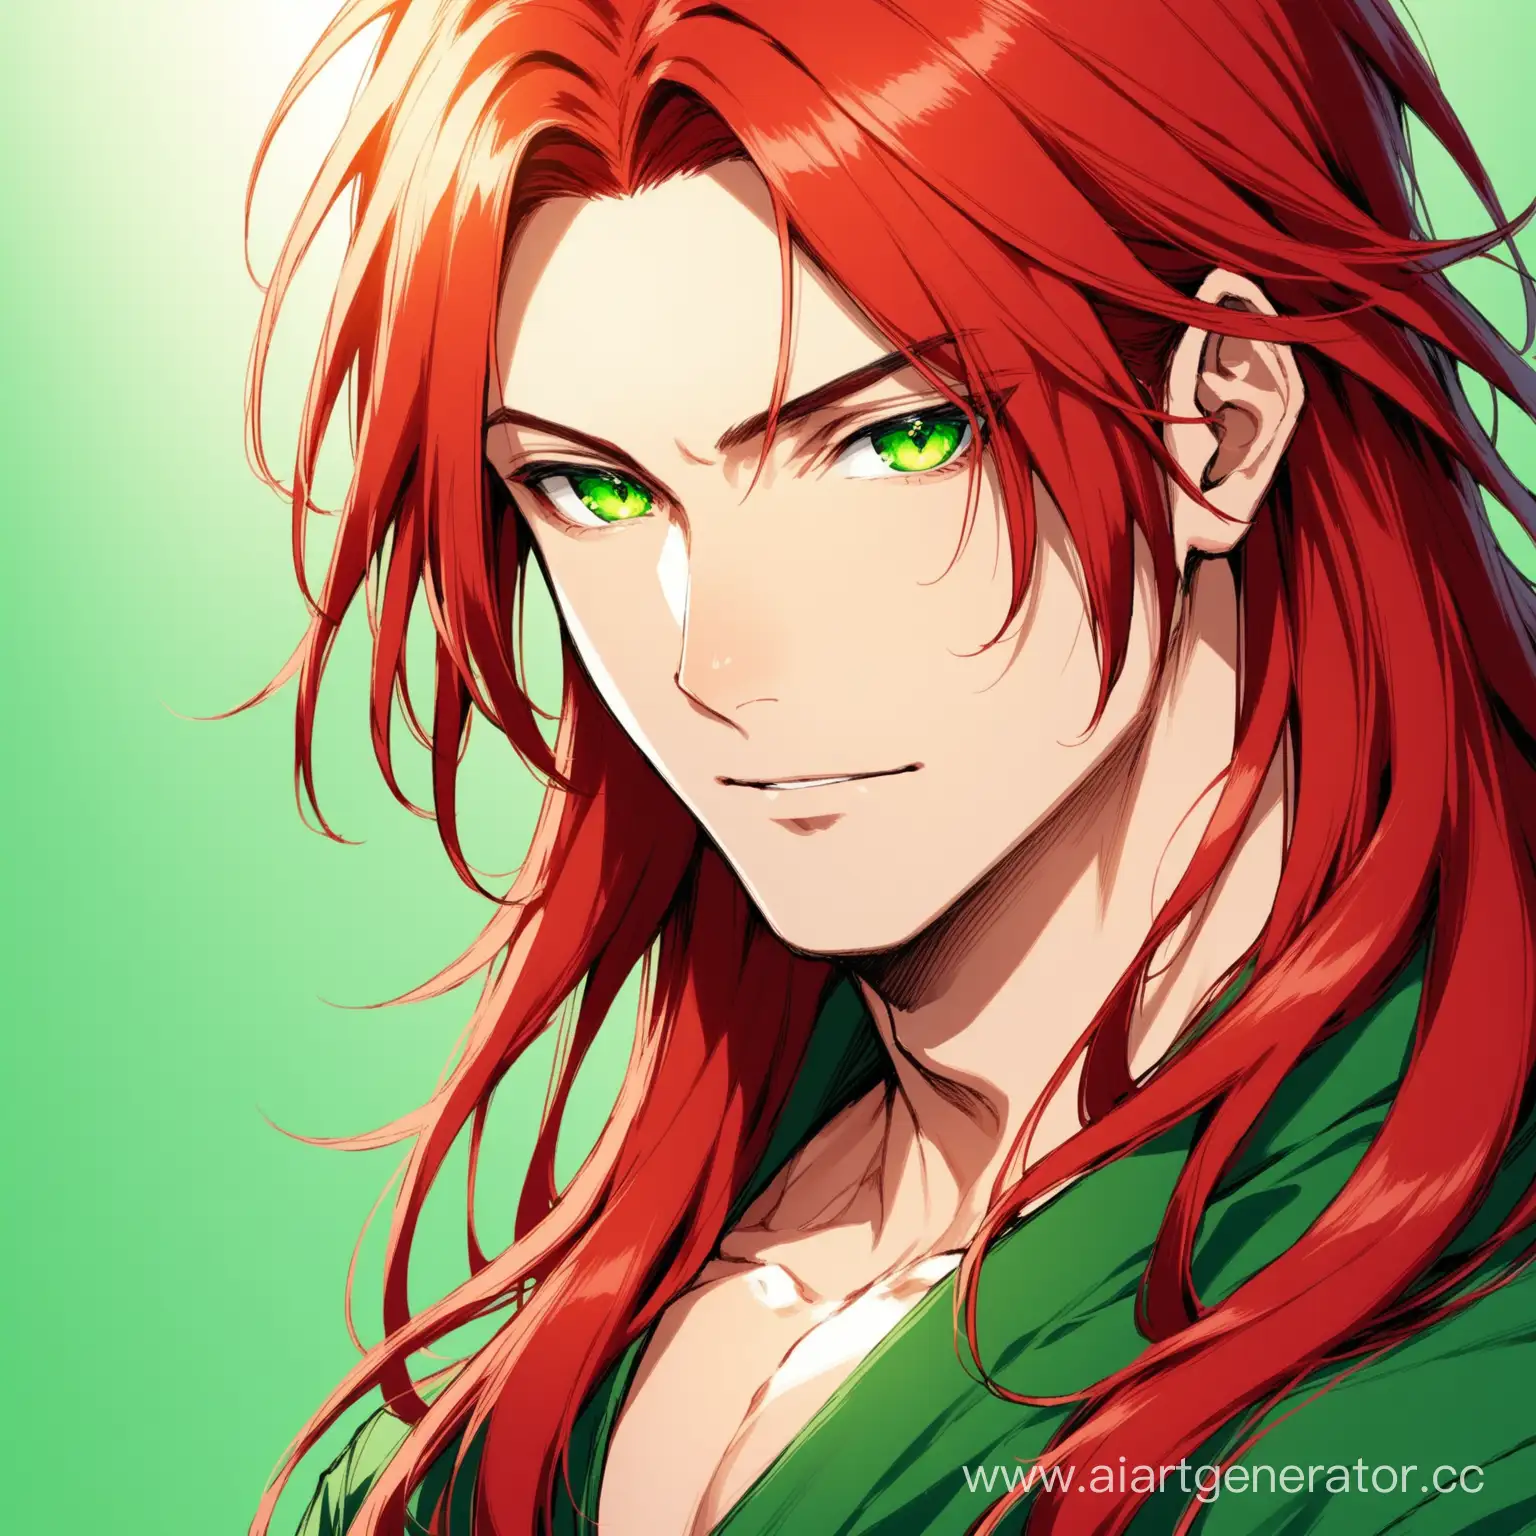 Парень с длинными красными волосами и зелёными глазами